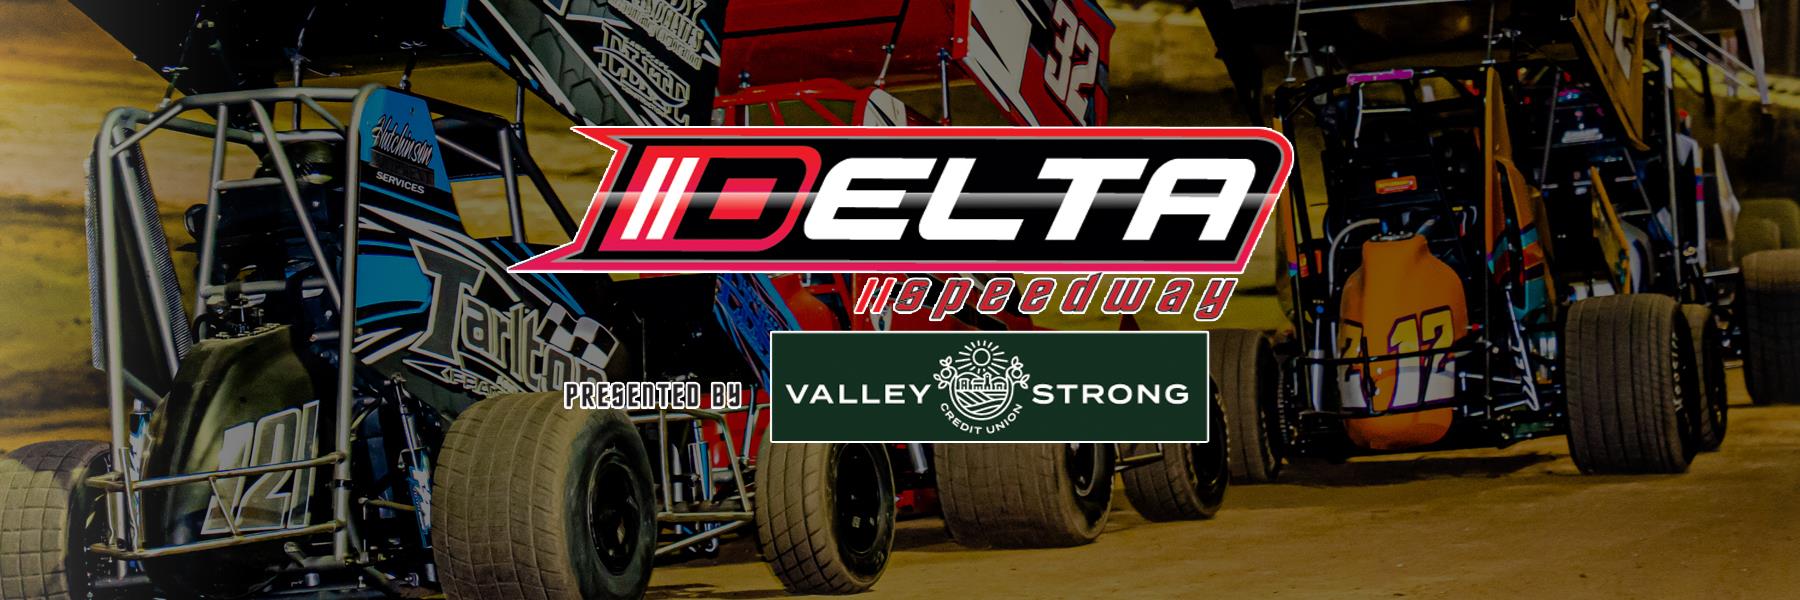 8/19/2017 - Delta Speedway